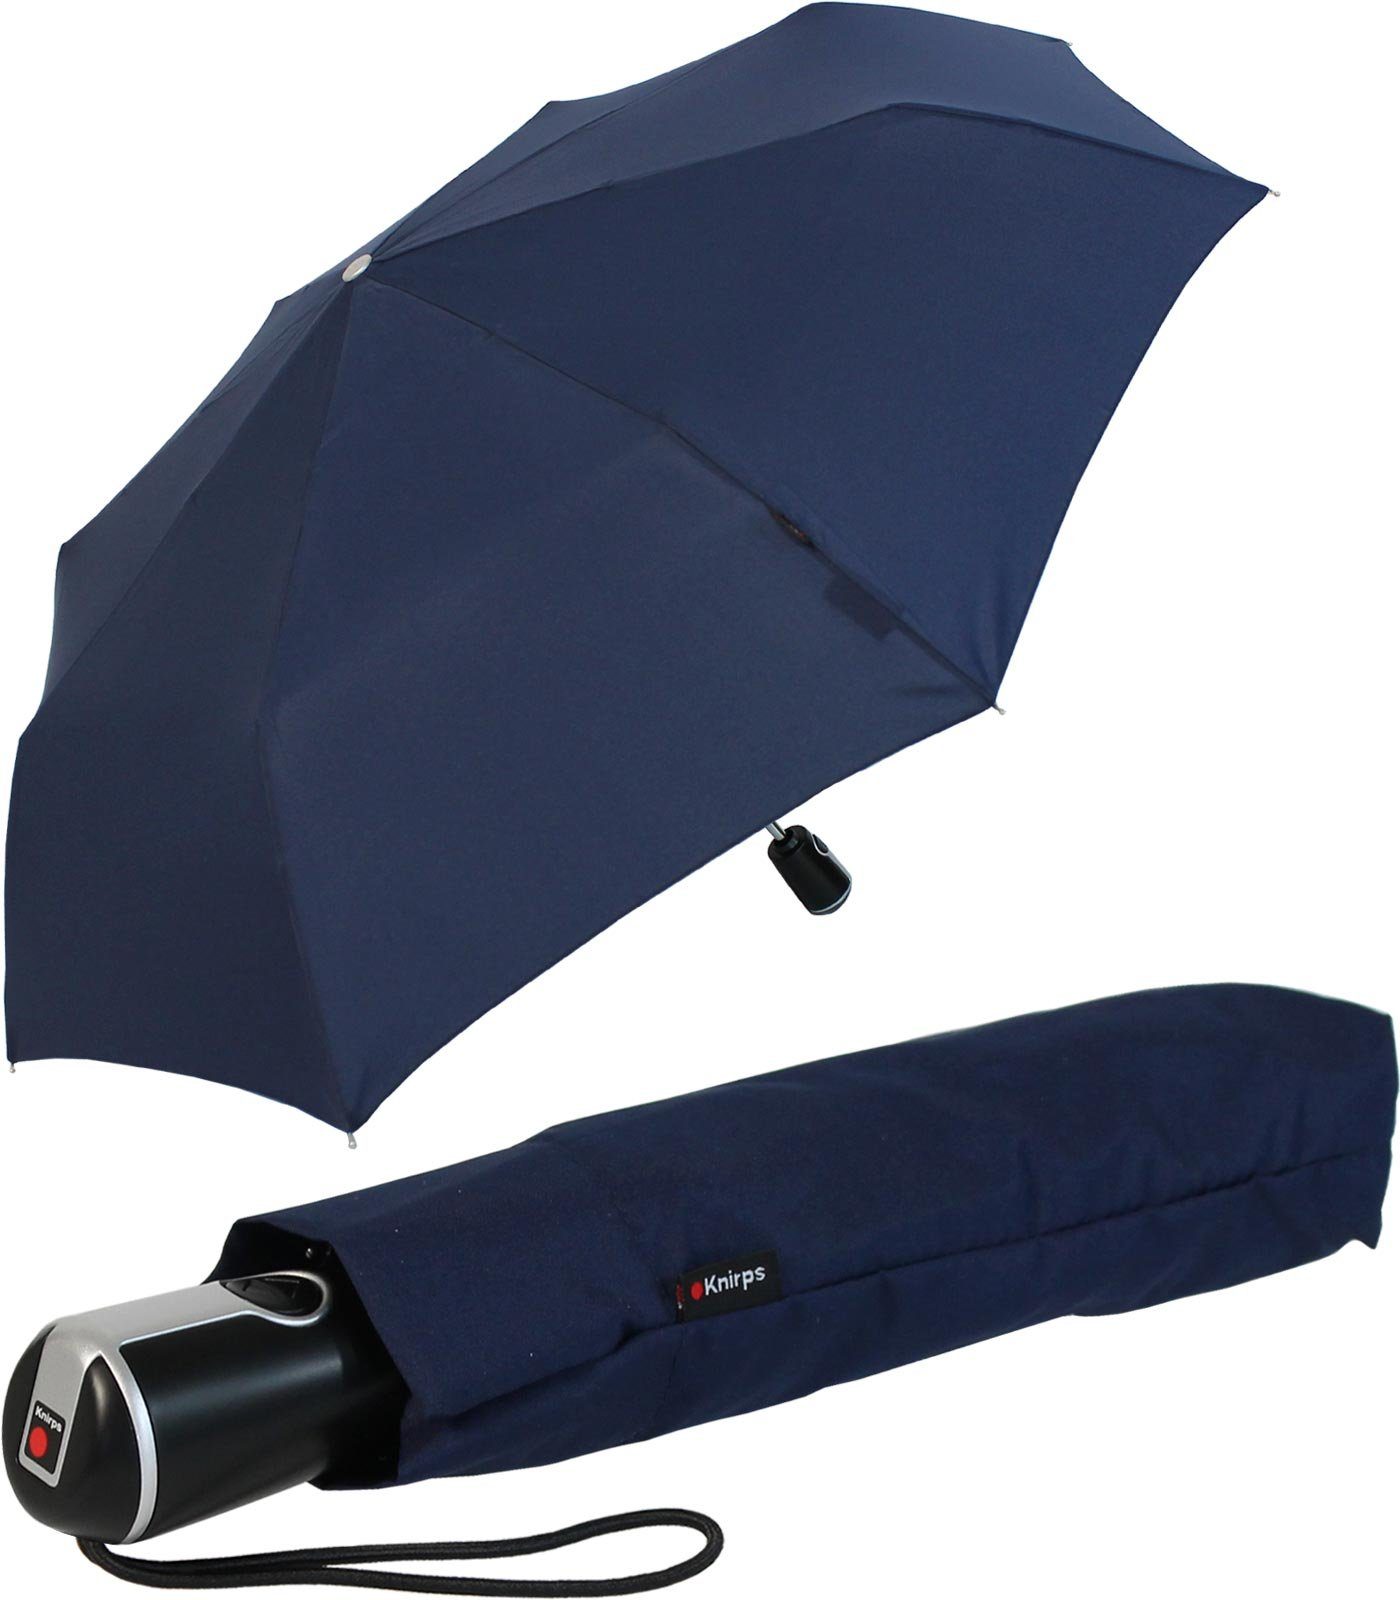 Knirps® Taschenregenschirm Large Duomatic mit Auf-Zu-Automatik, der große, stabile Begleiter navy-blau